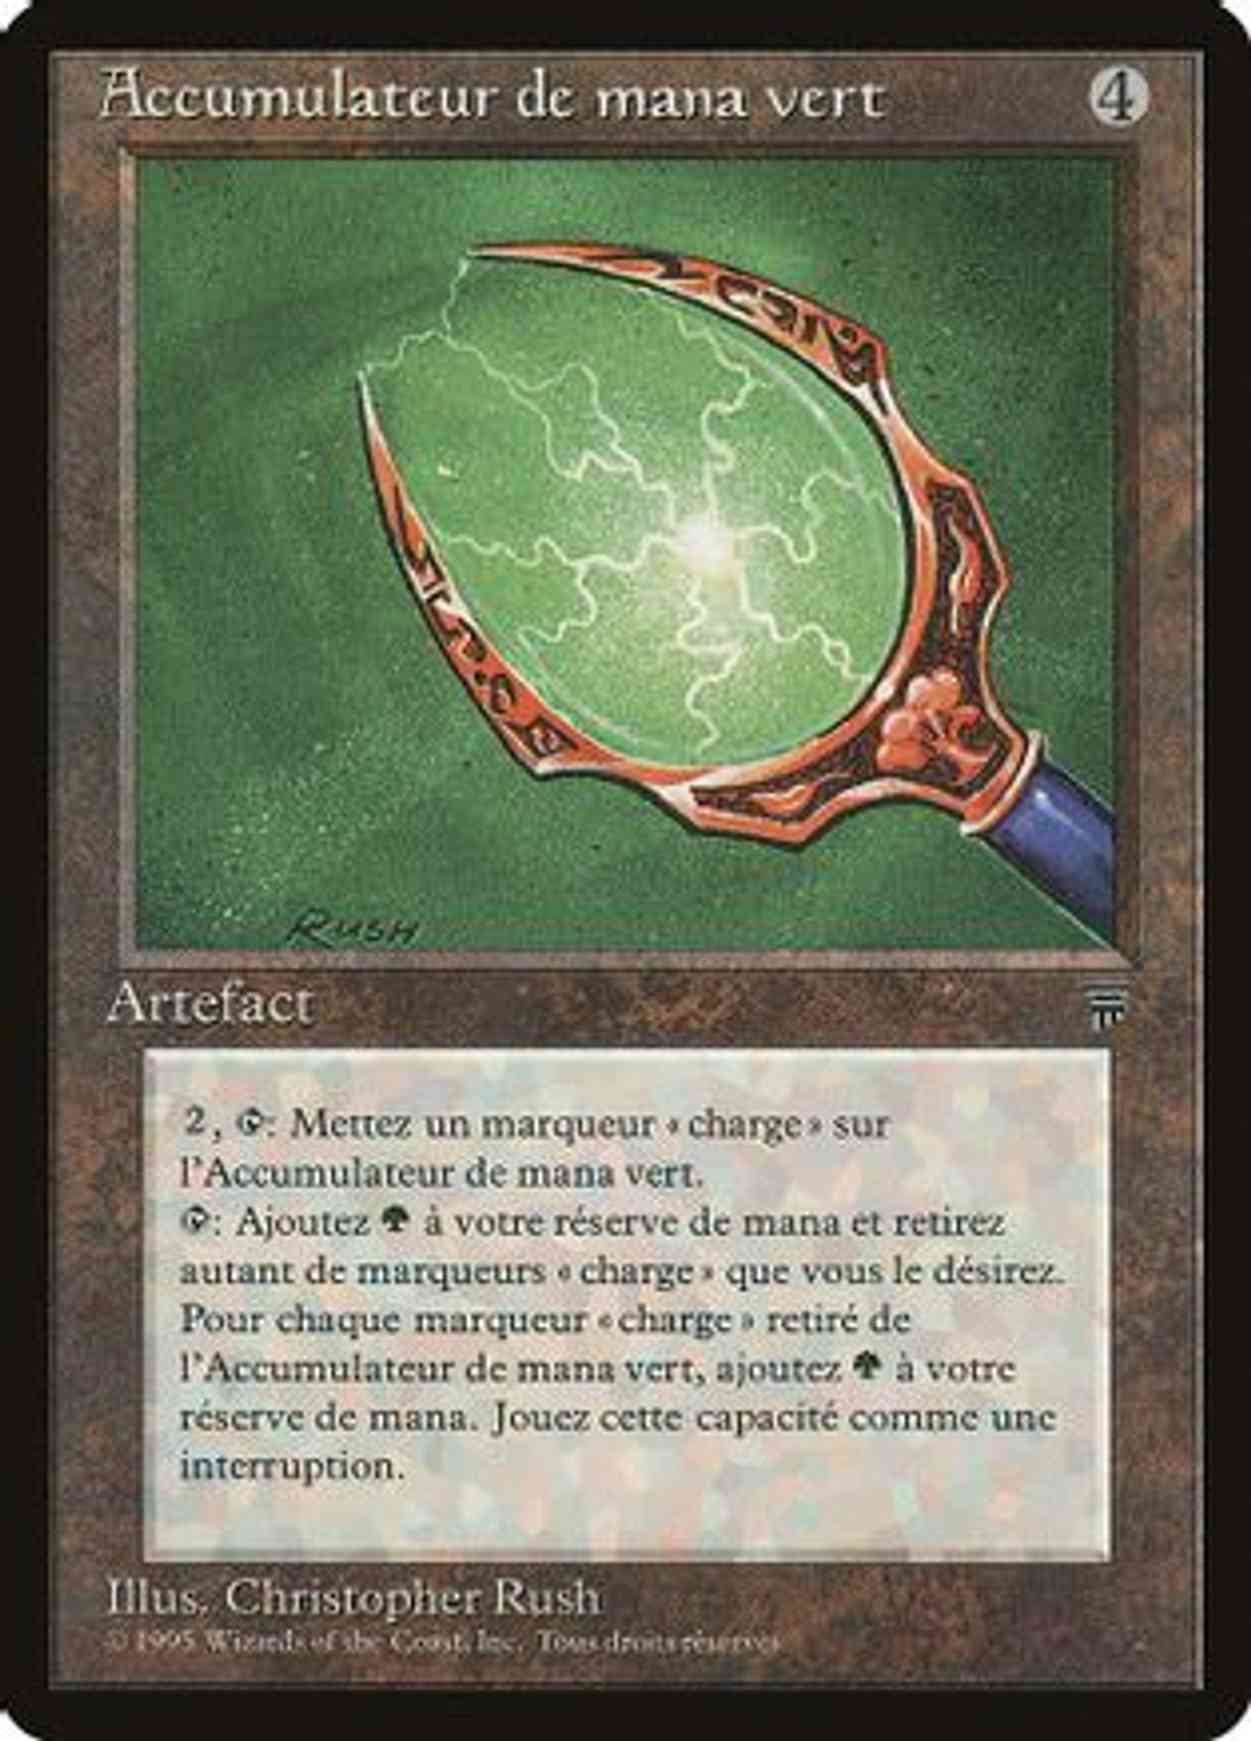 Green Mana Battery (French) - "Accumulateur de mana vert" magic card front